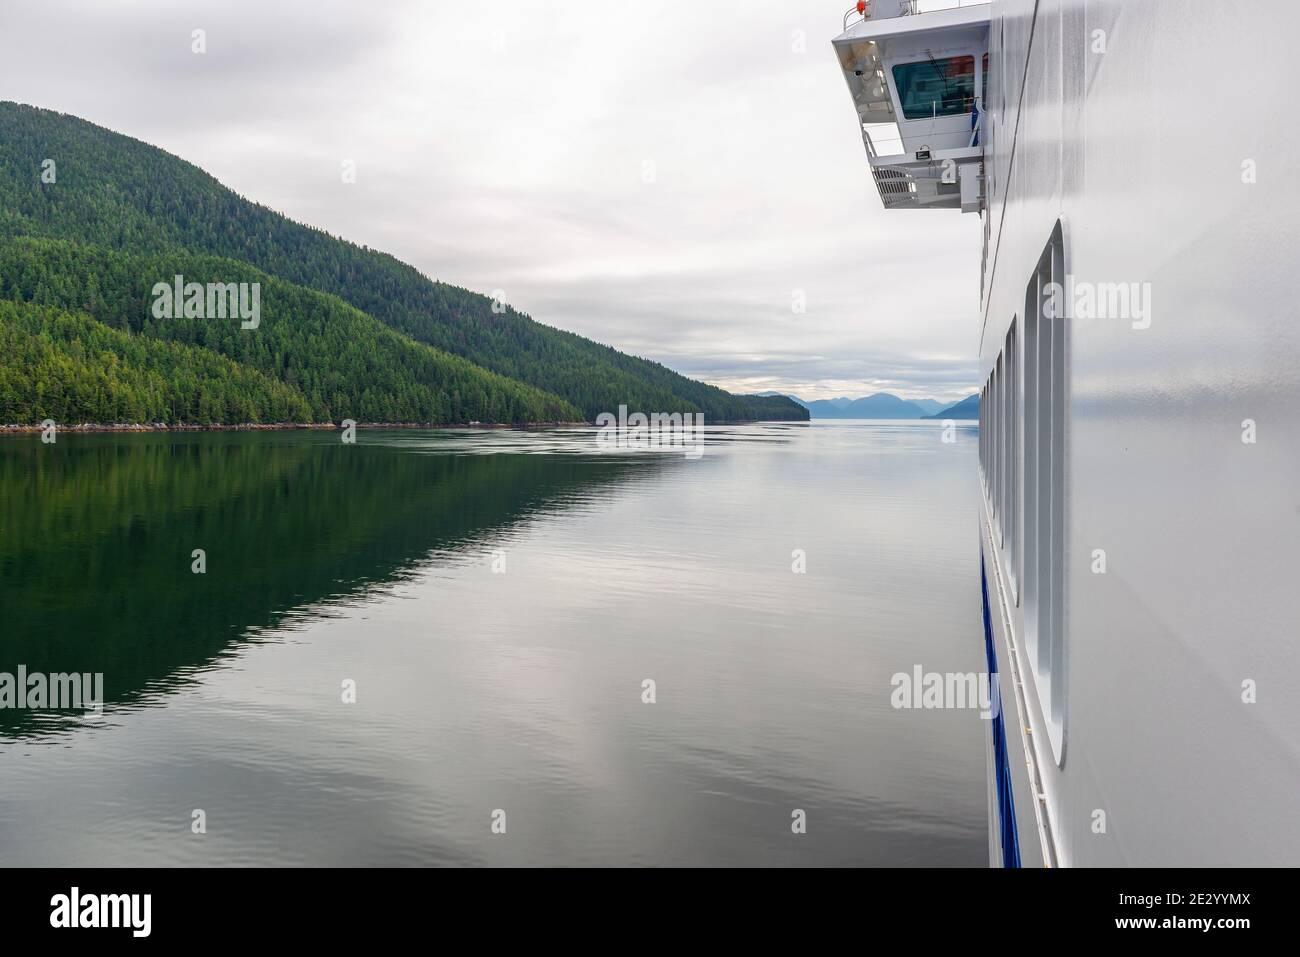 Landschaft entlang der Inside Passage Kreuzfahrt vom Kreuzfahrtschiff aus gesehen, Vancouver Island, British Columbia, Kanada. Konzentrieren Sie sich auf das Boot. Stockfoto